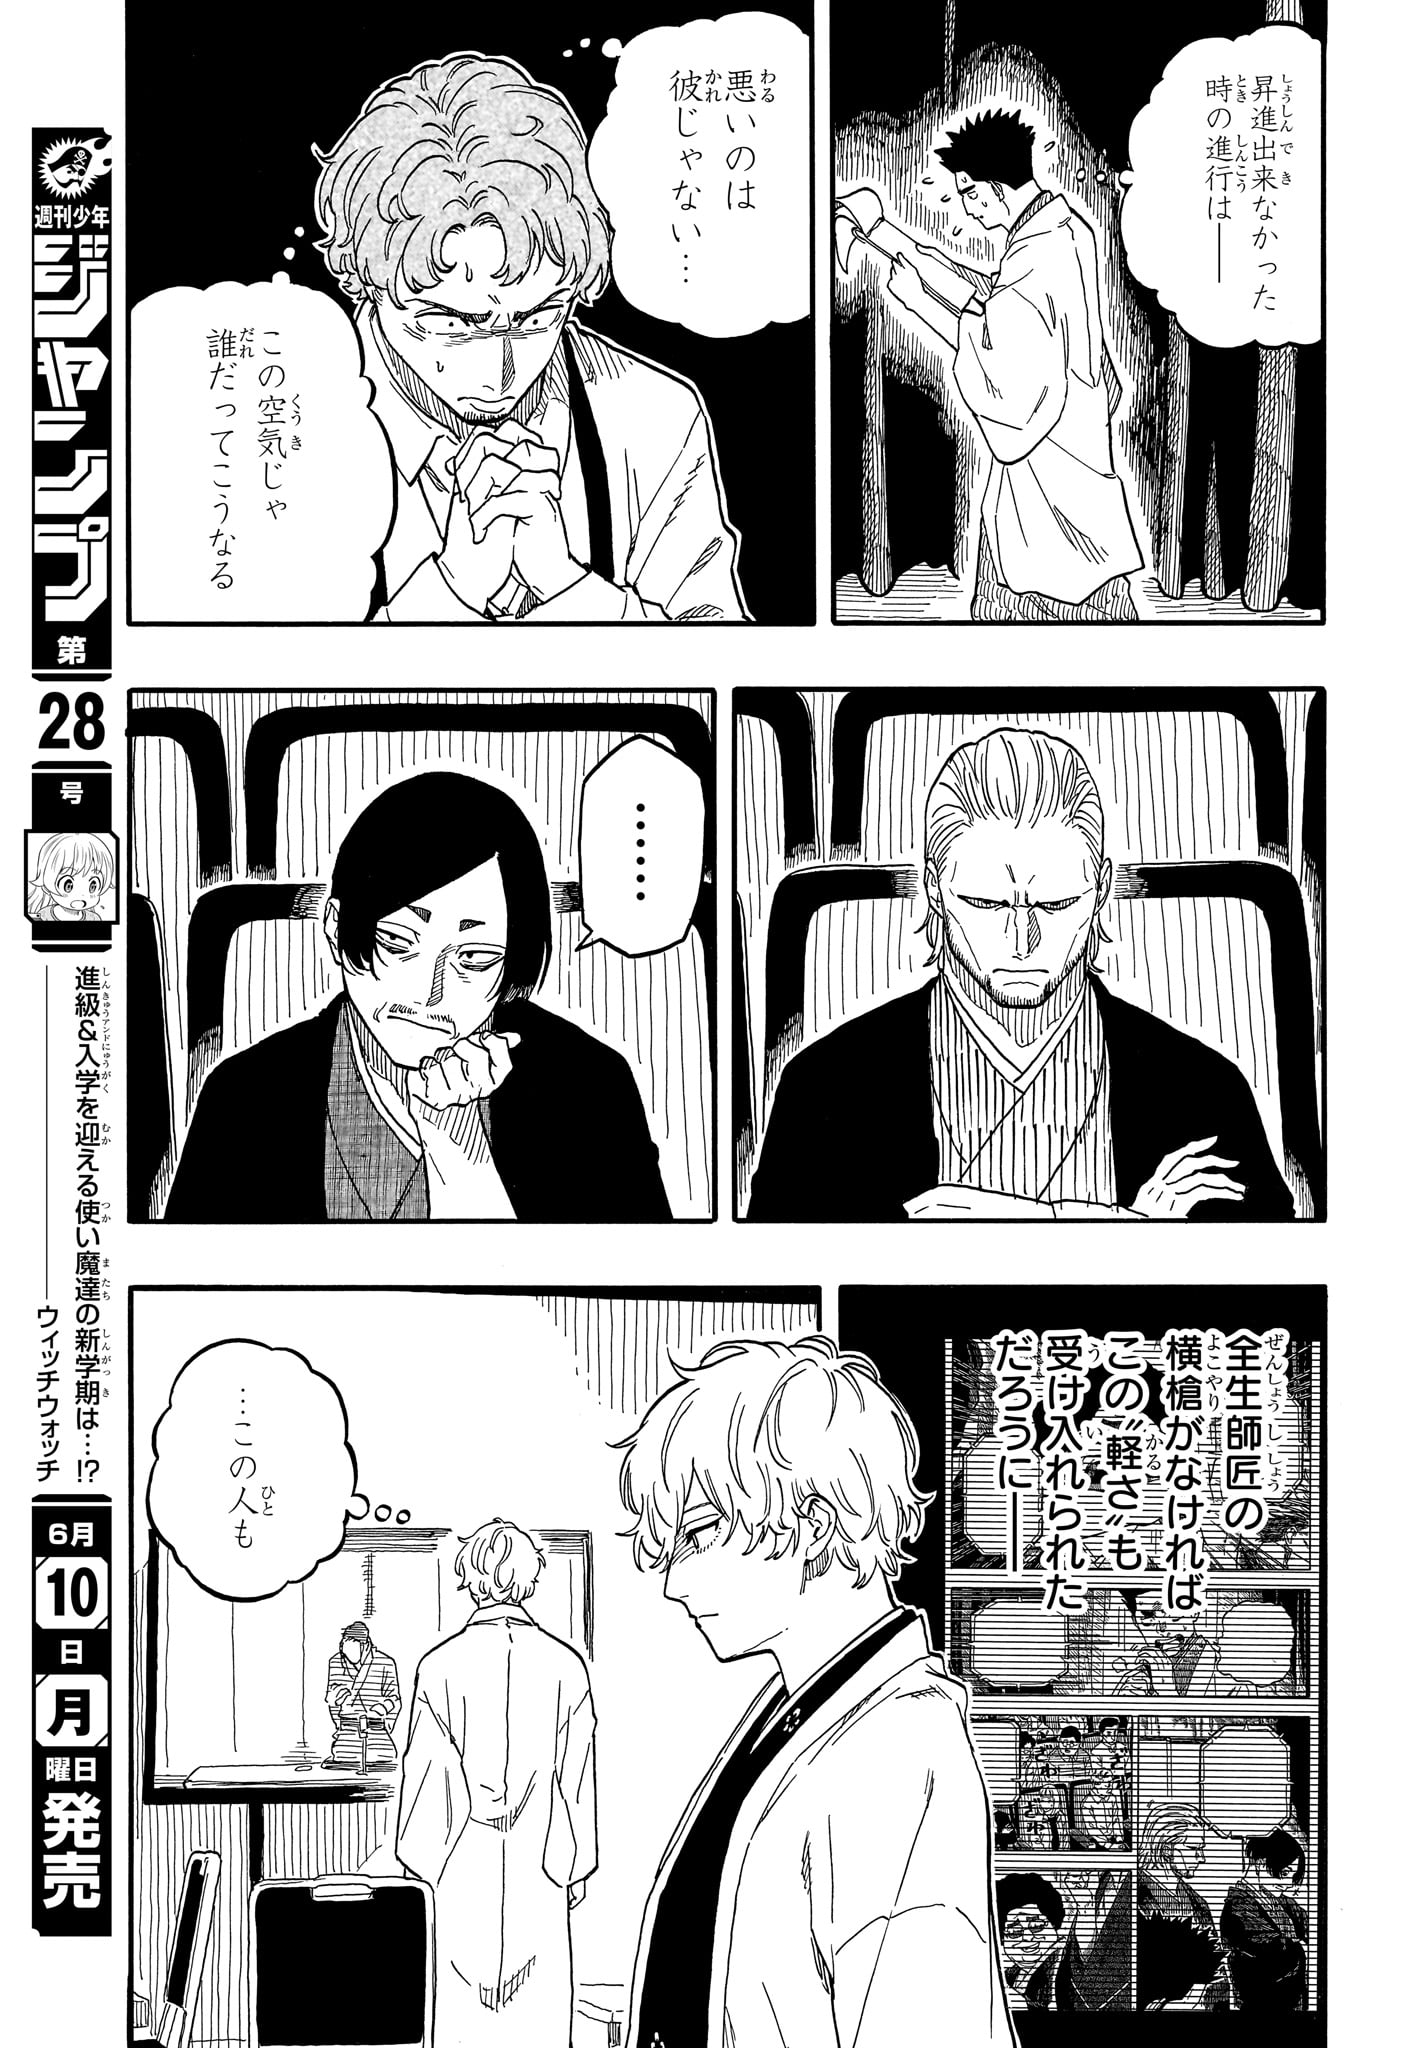 Akane-Banashi - Chapter 112 - Page 15